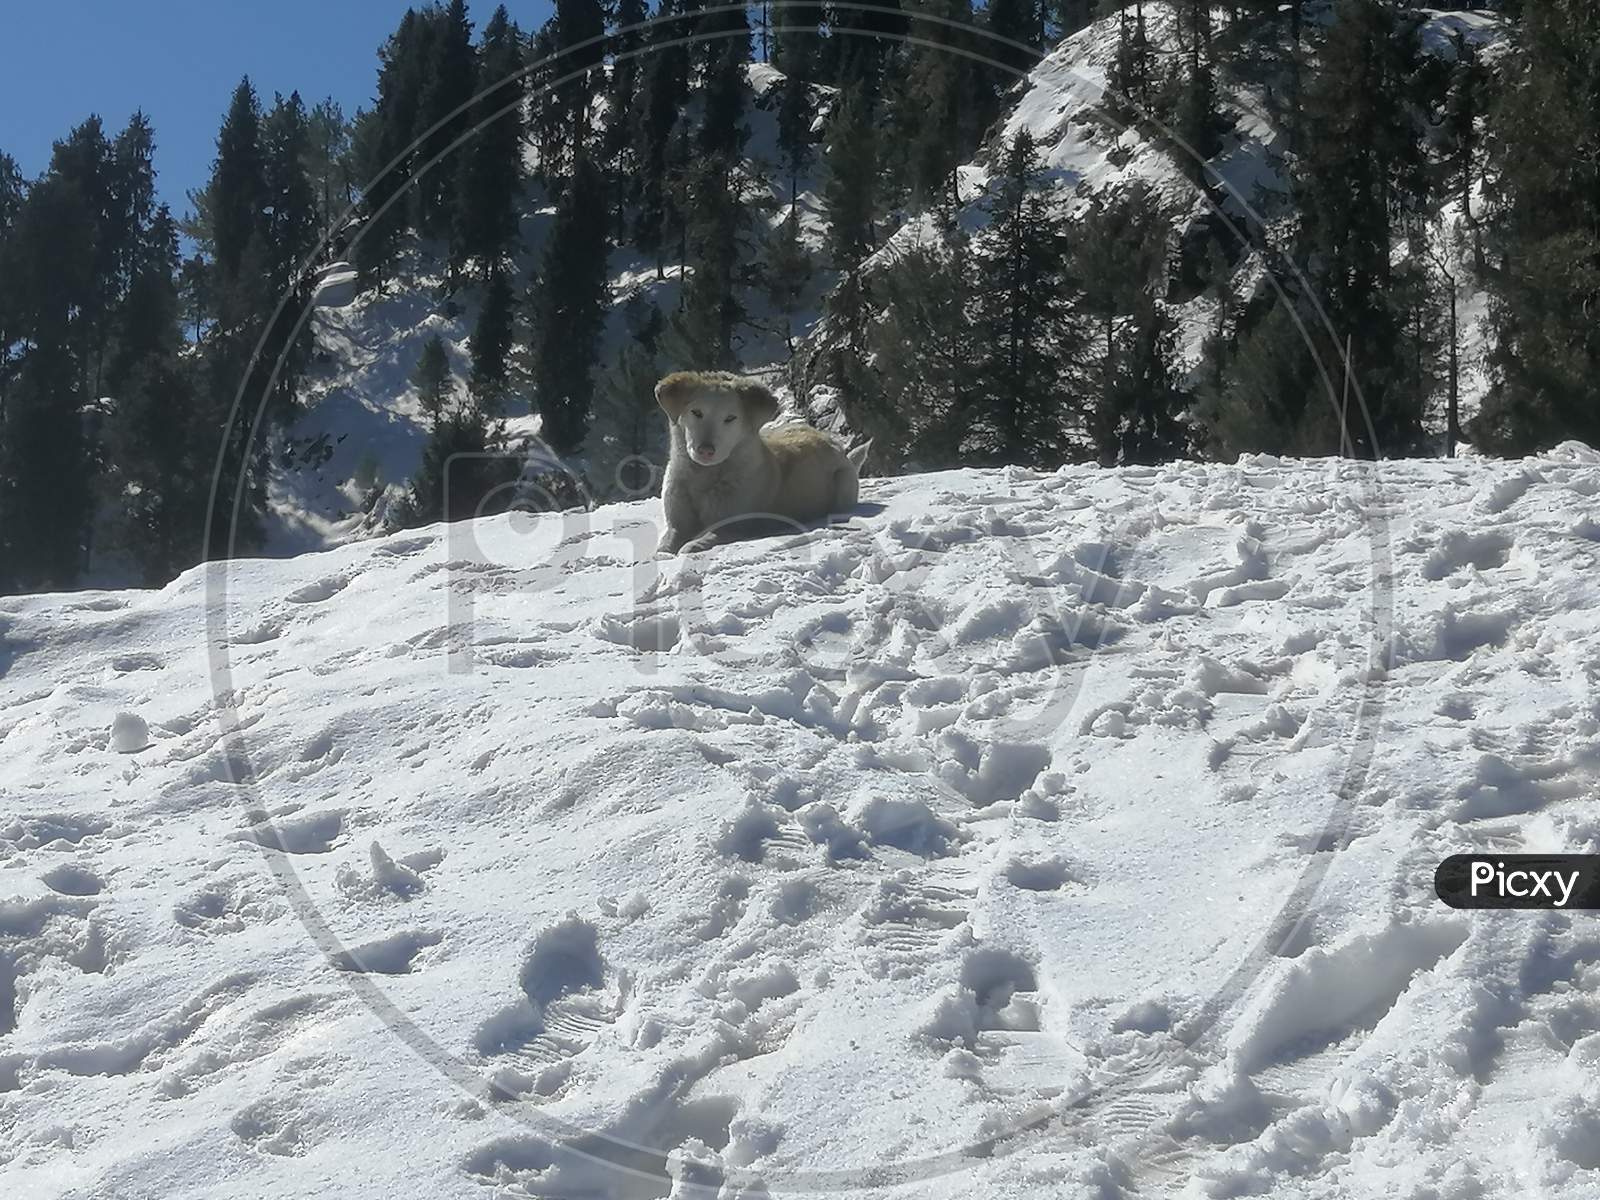 Snowy dog on snow